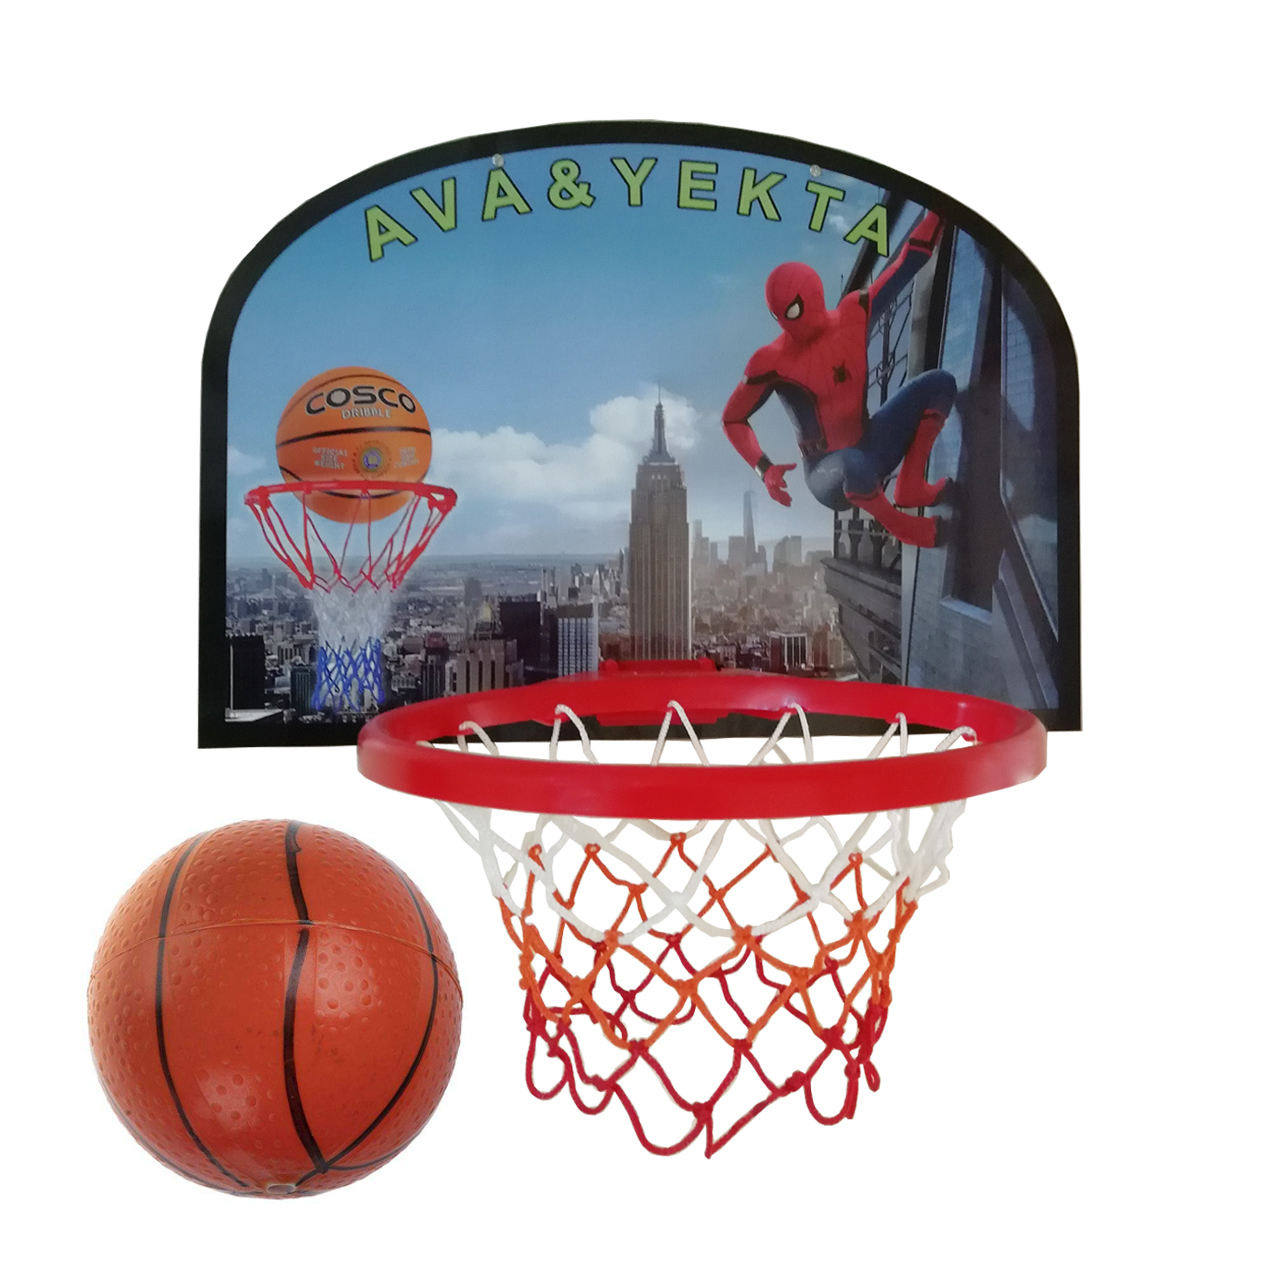 اسباب بازی بسکتبال مدل pro player به همراه توپ